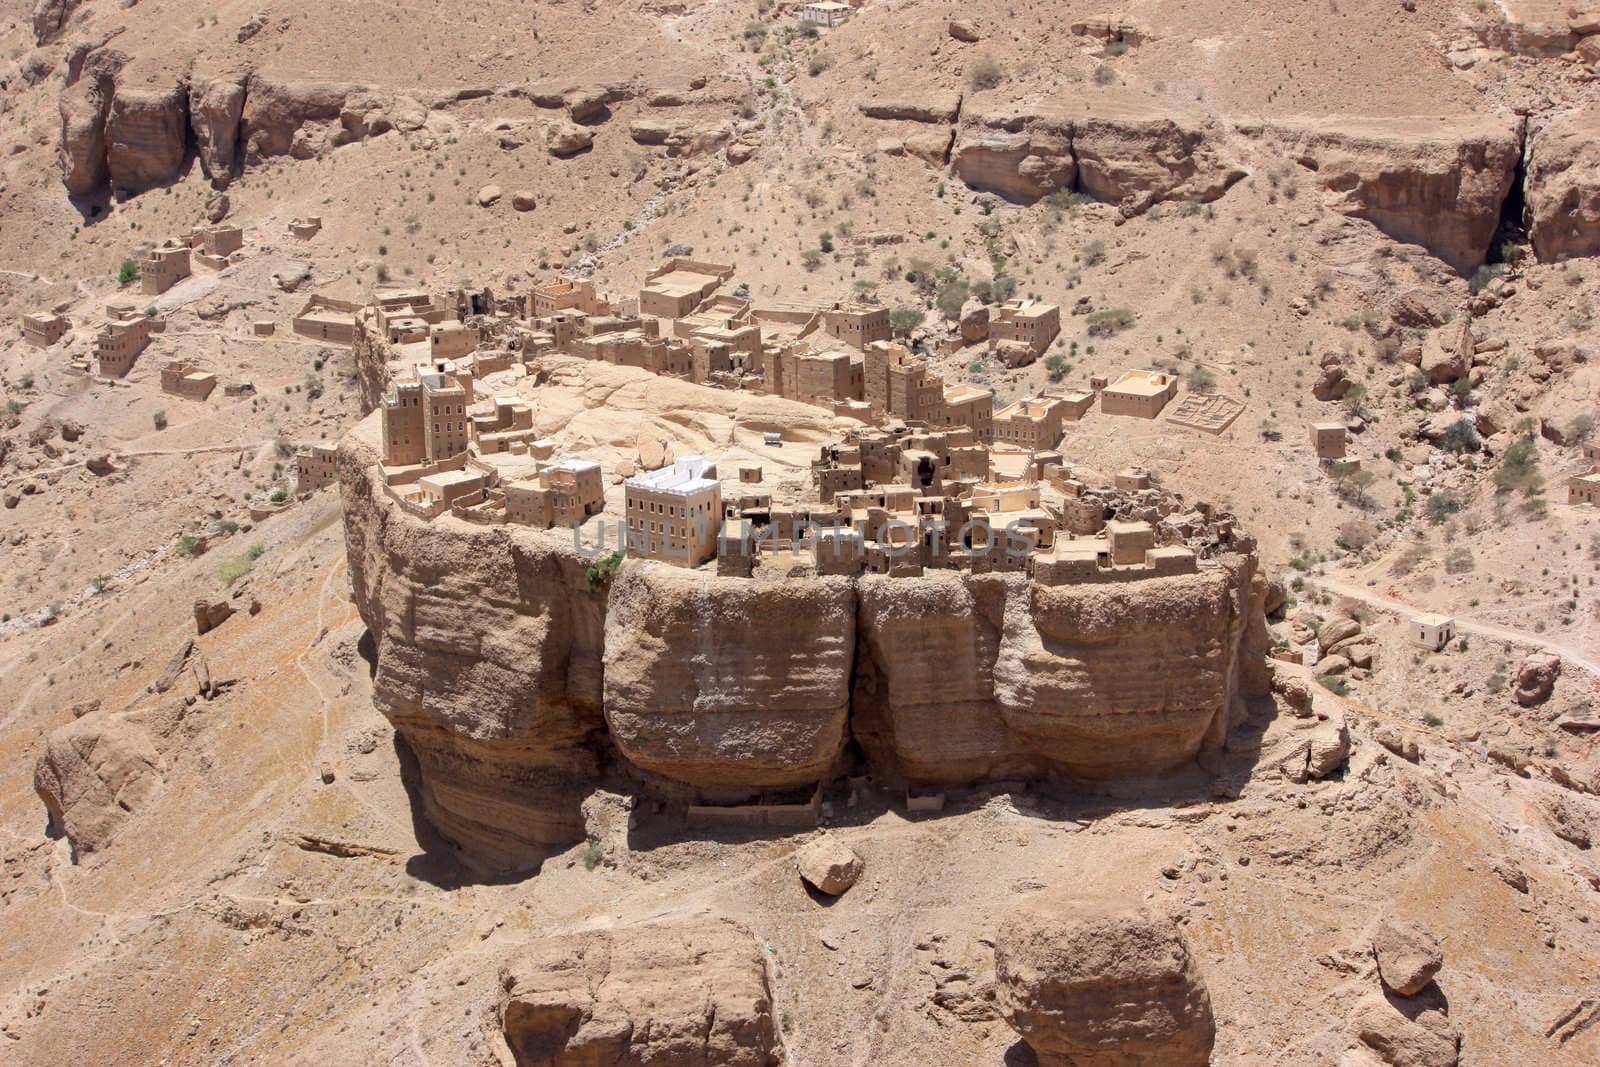 Mud-brick village in Yemen